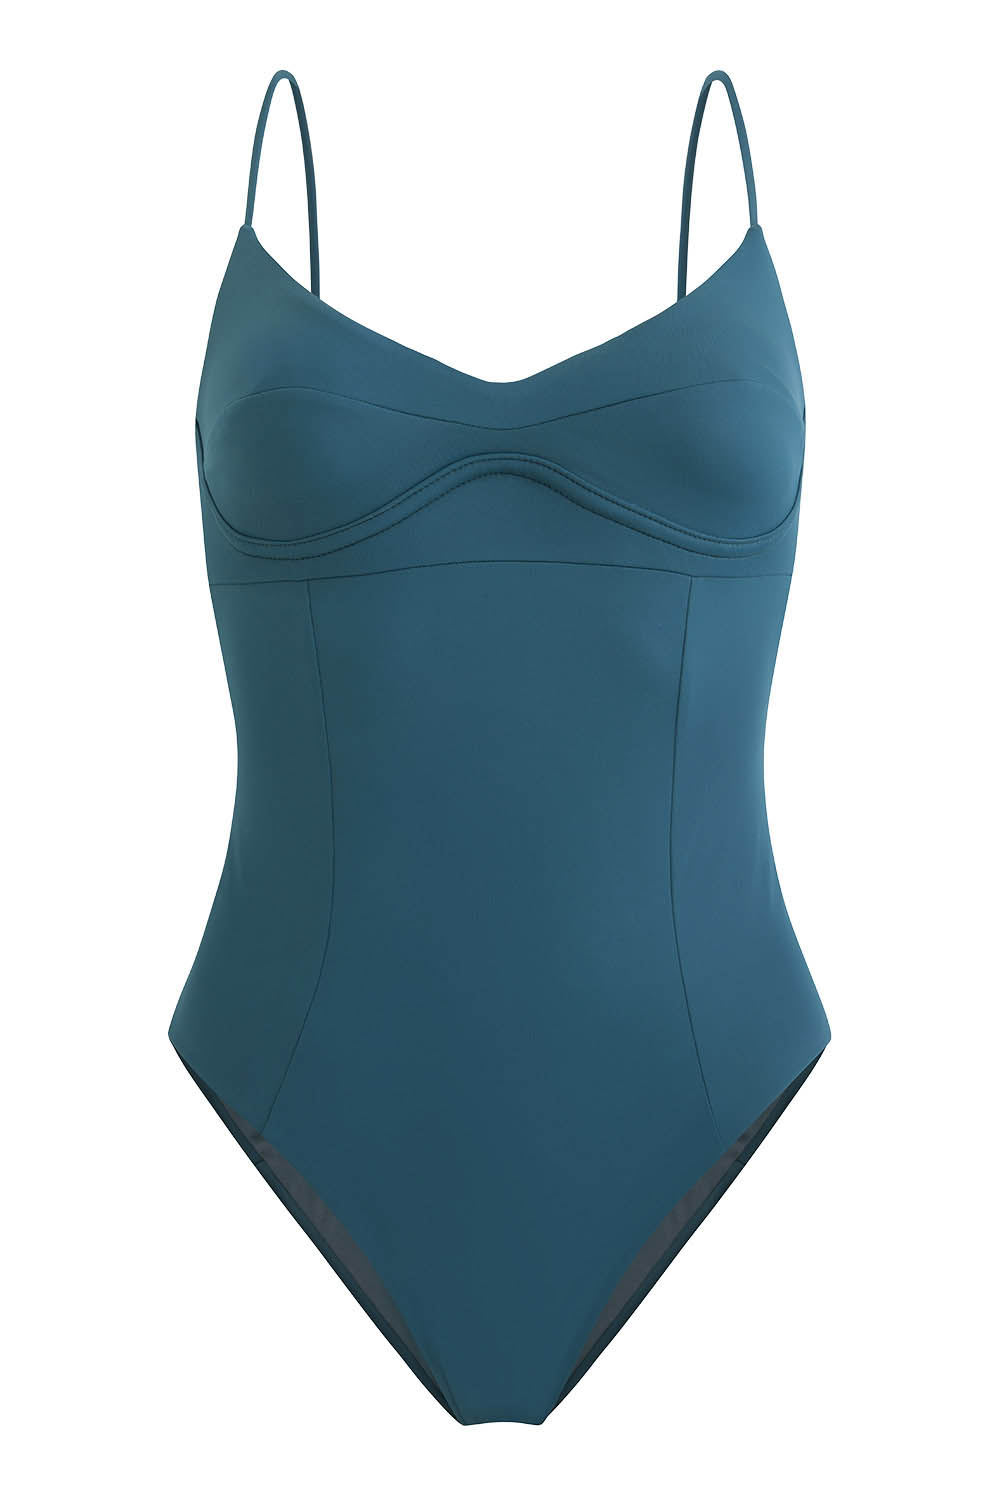 Sustainable Luxury Swimwear / Ropa de baño sostenible, eco swimsuit / bañador ecológico. Barton onepiece in algae, by NOW_THEN